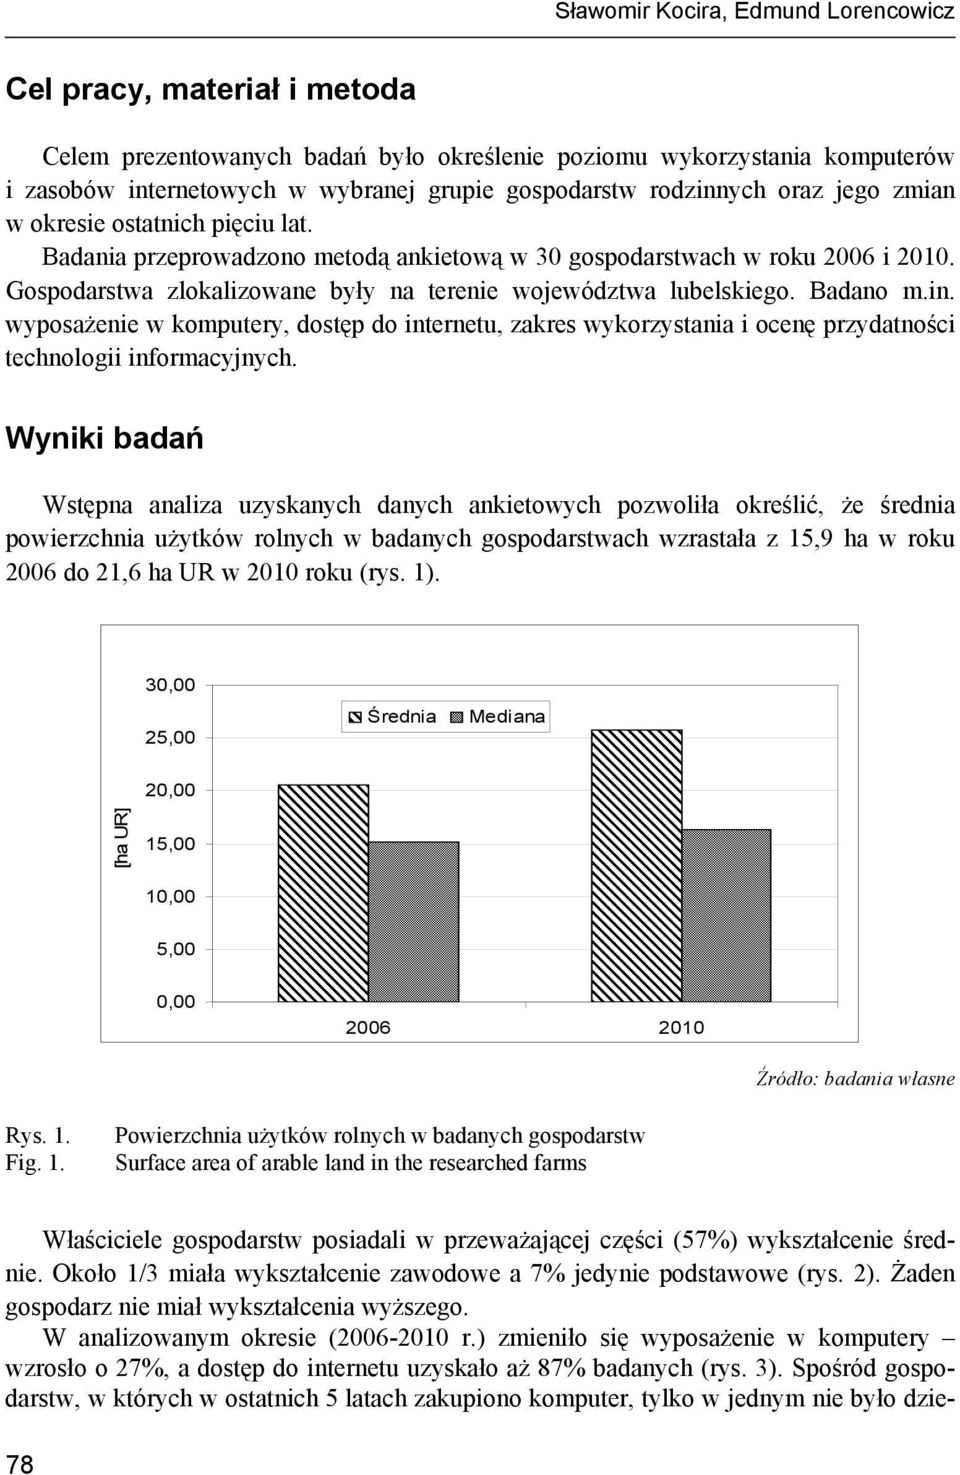 Gospodarstwa zlokalizowane były na terenie województwa lubelskiego. Badano m.in. wyposażenie w komputery, dostęp do internetu, zakres wykorzystania i ocenę przydatności technologii informacyjnych.